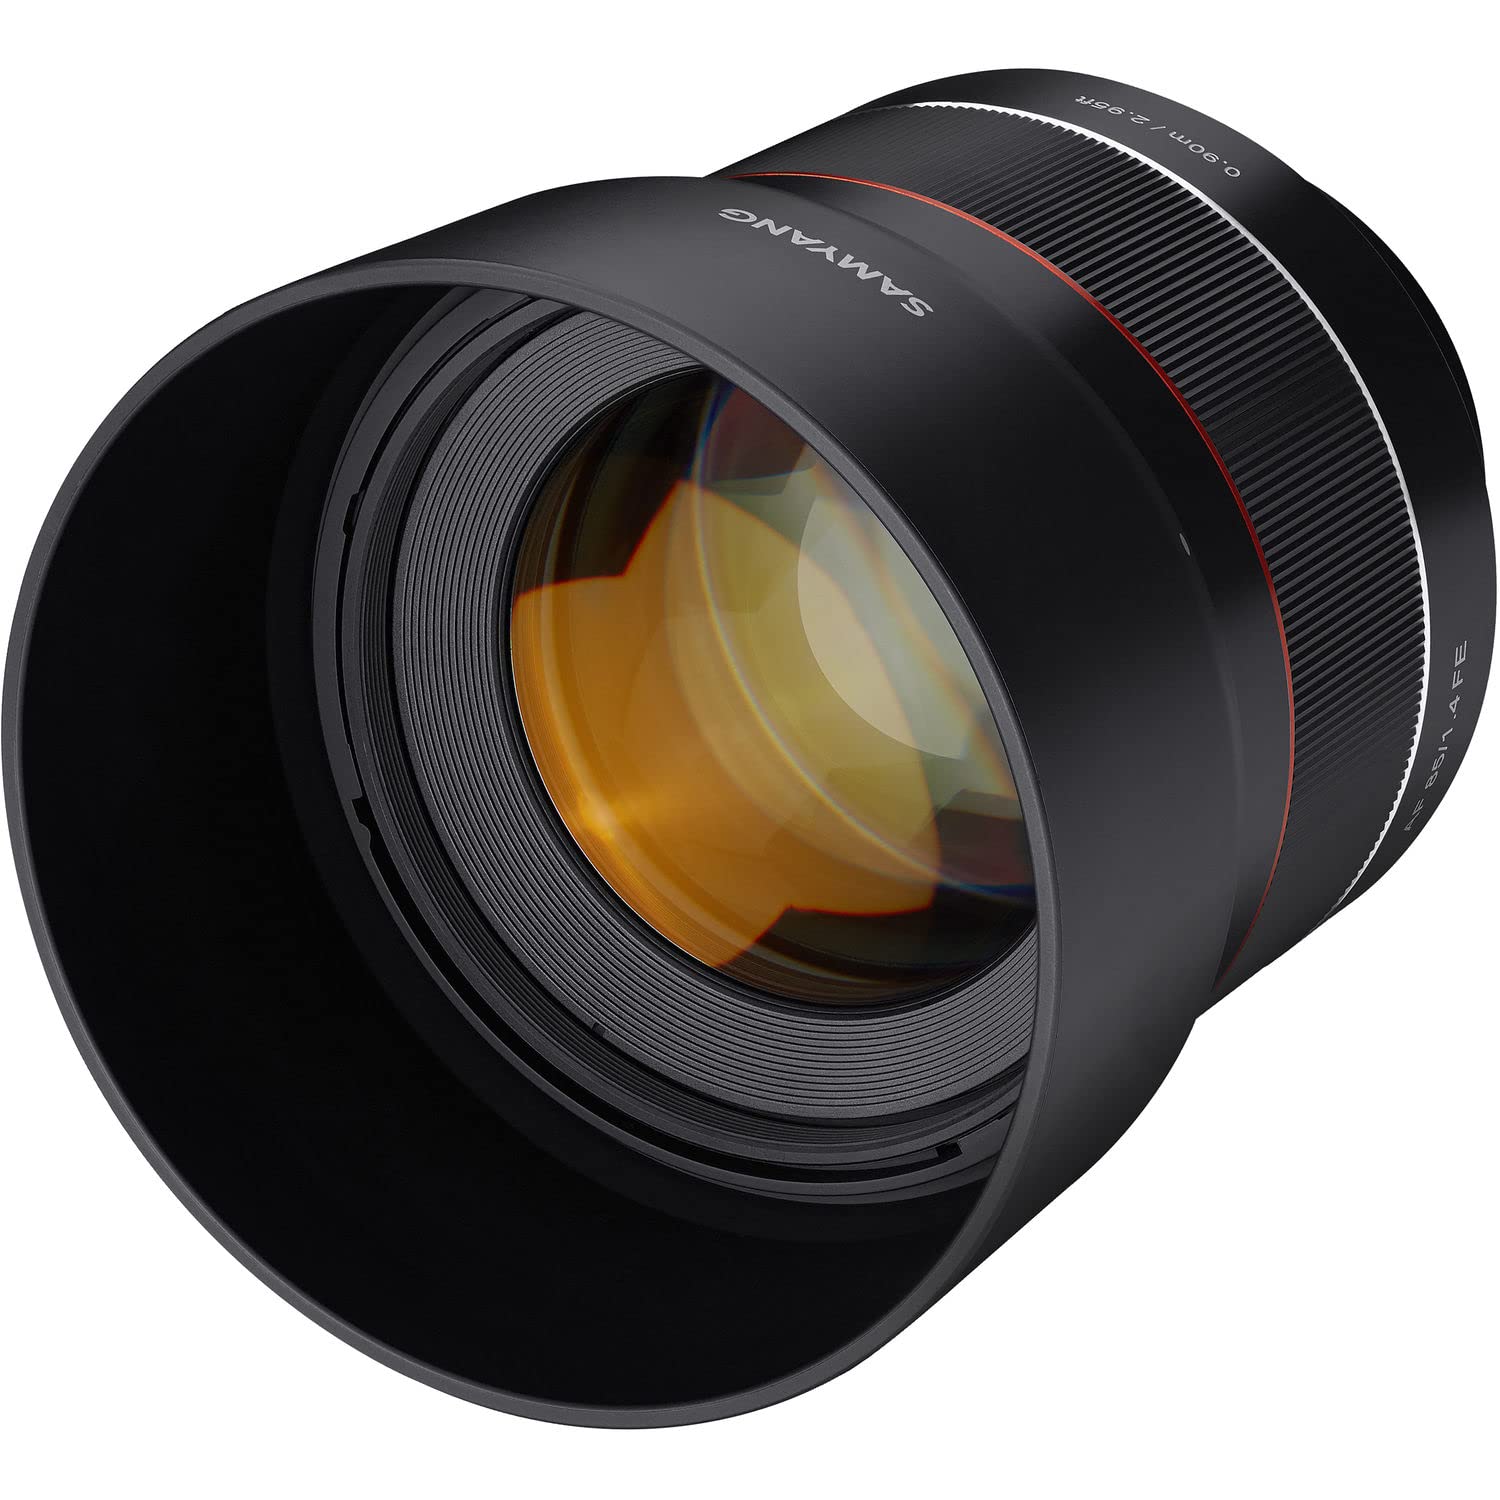 Samyang AF 85 mm /F1.4 für Sony FE - 85mm Portrait Festbrennweite Autofokus Vollformat Objektiv für Sony Alpha spiegellose Systemkameras, Vollformat und APS-C Kameras mit Sony E Mount, FE Mount